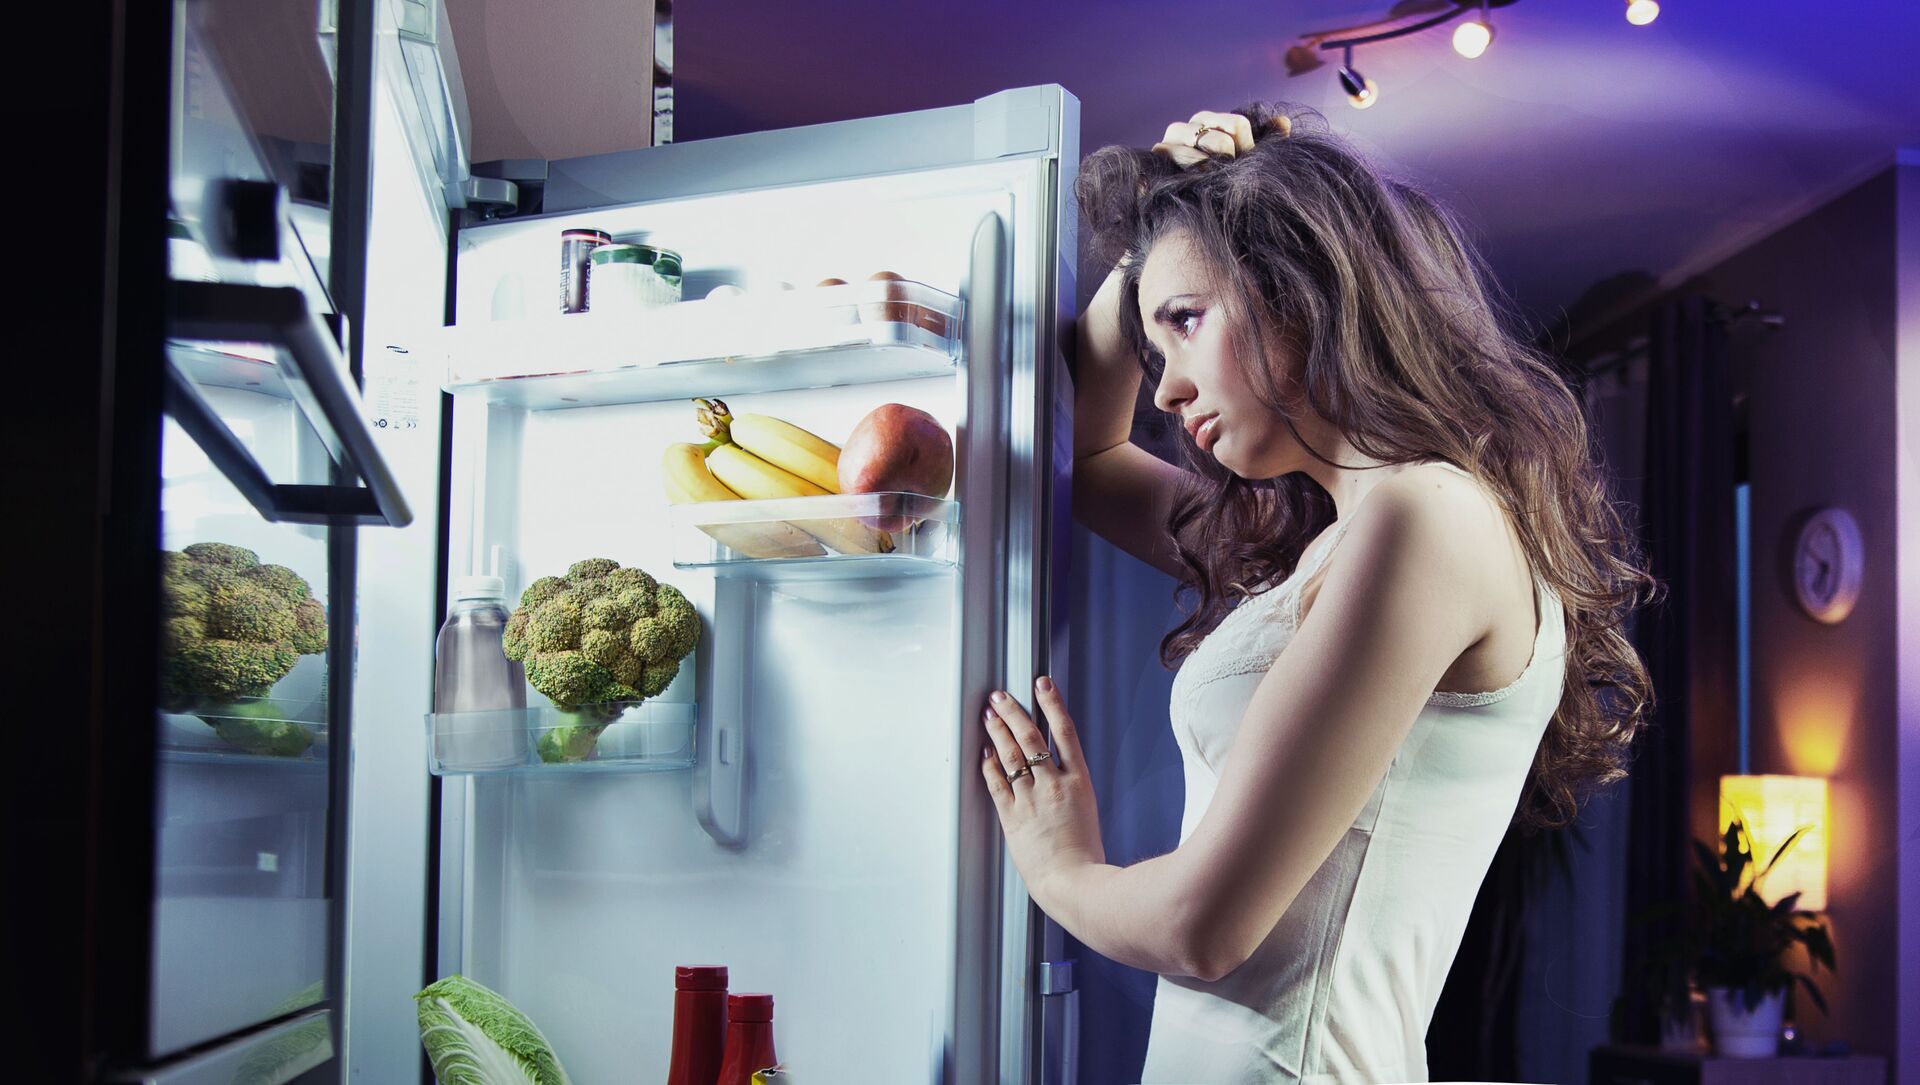 Раздетая мамка у холодильника фото